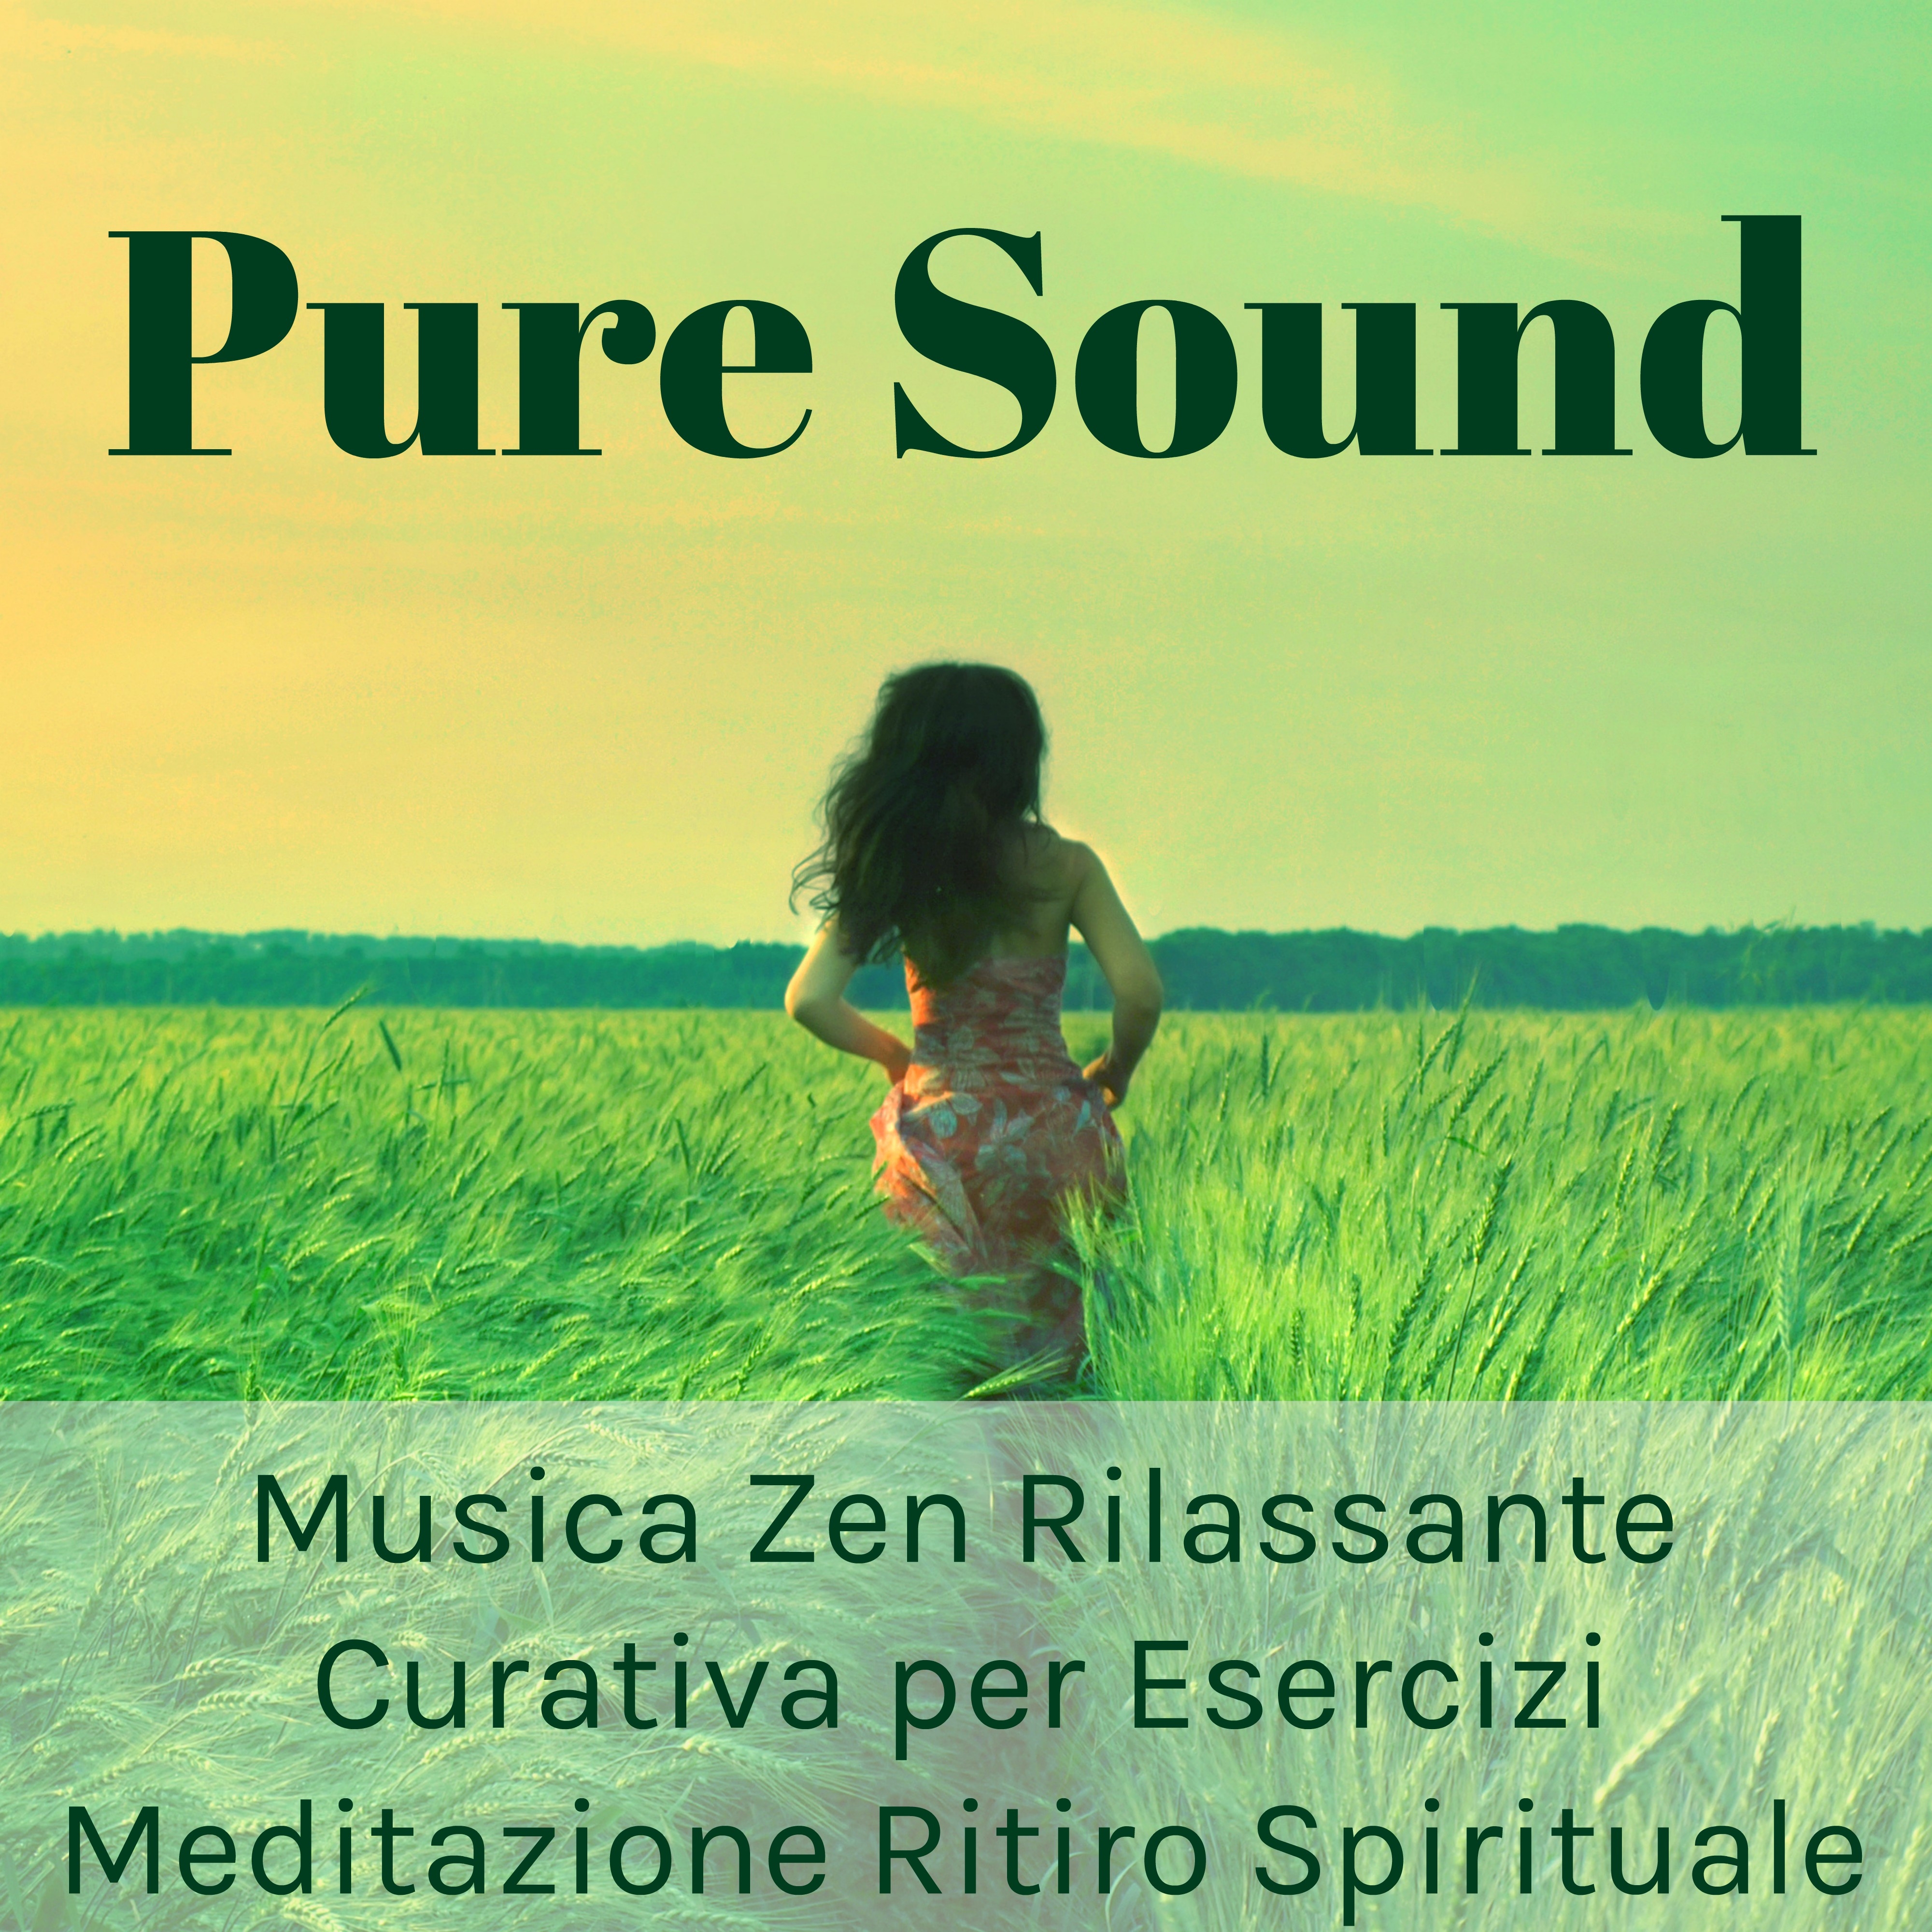 Pure Sound - Musica Zen Rilassante Curativa per Esercizi Meditazione Ritiro Spirituale con Suoni Benessere della Natura Strumentali